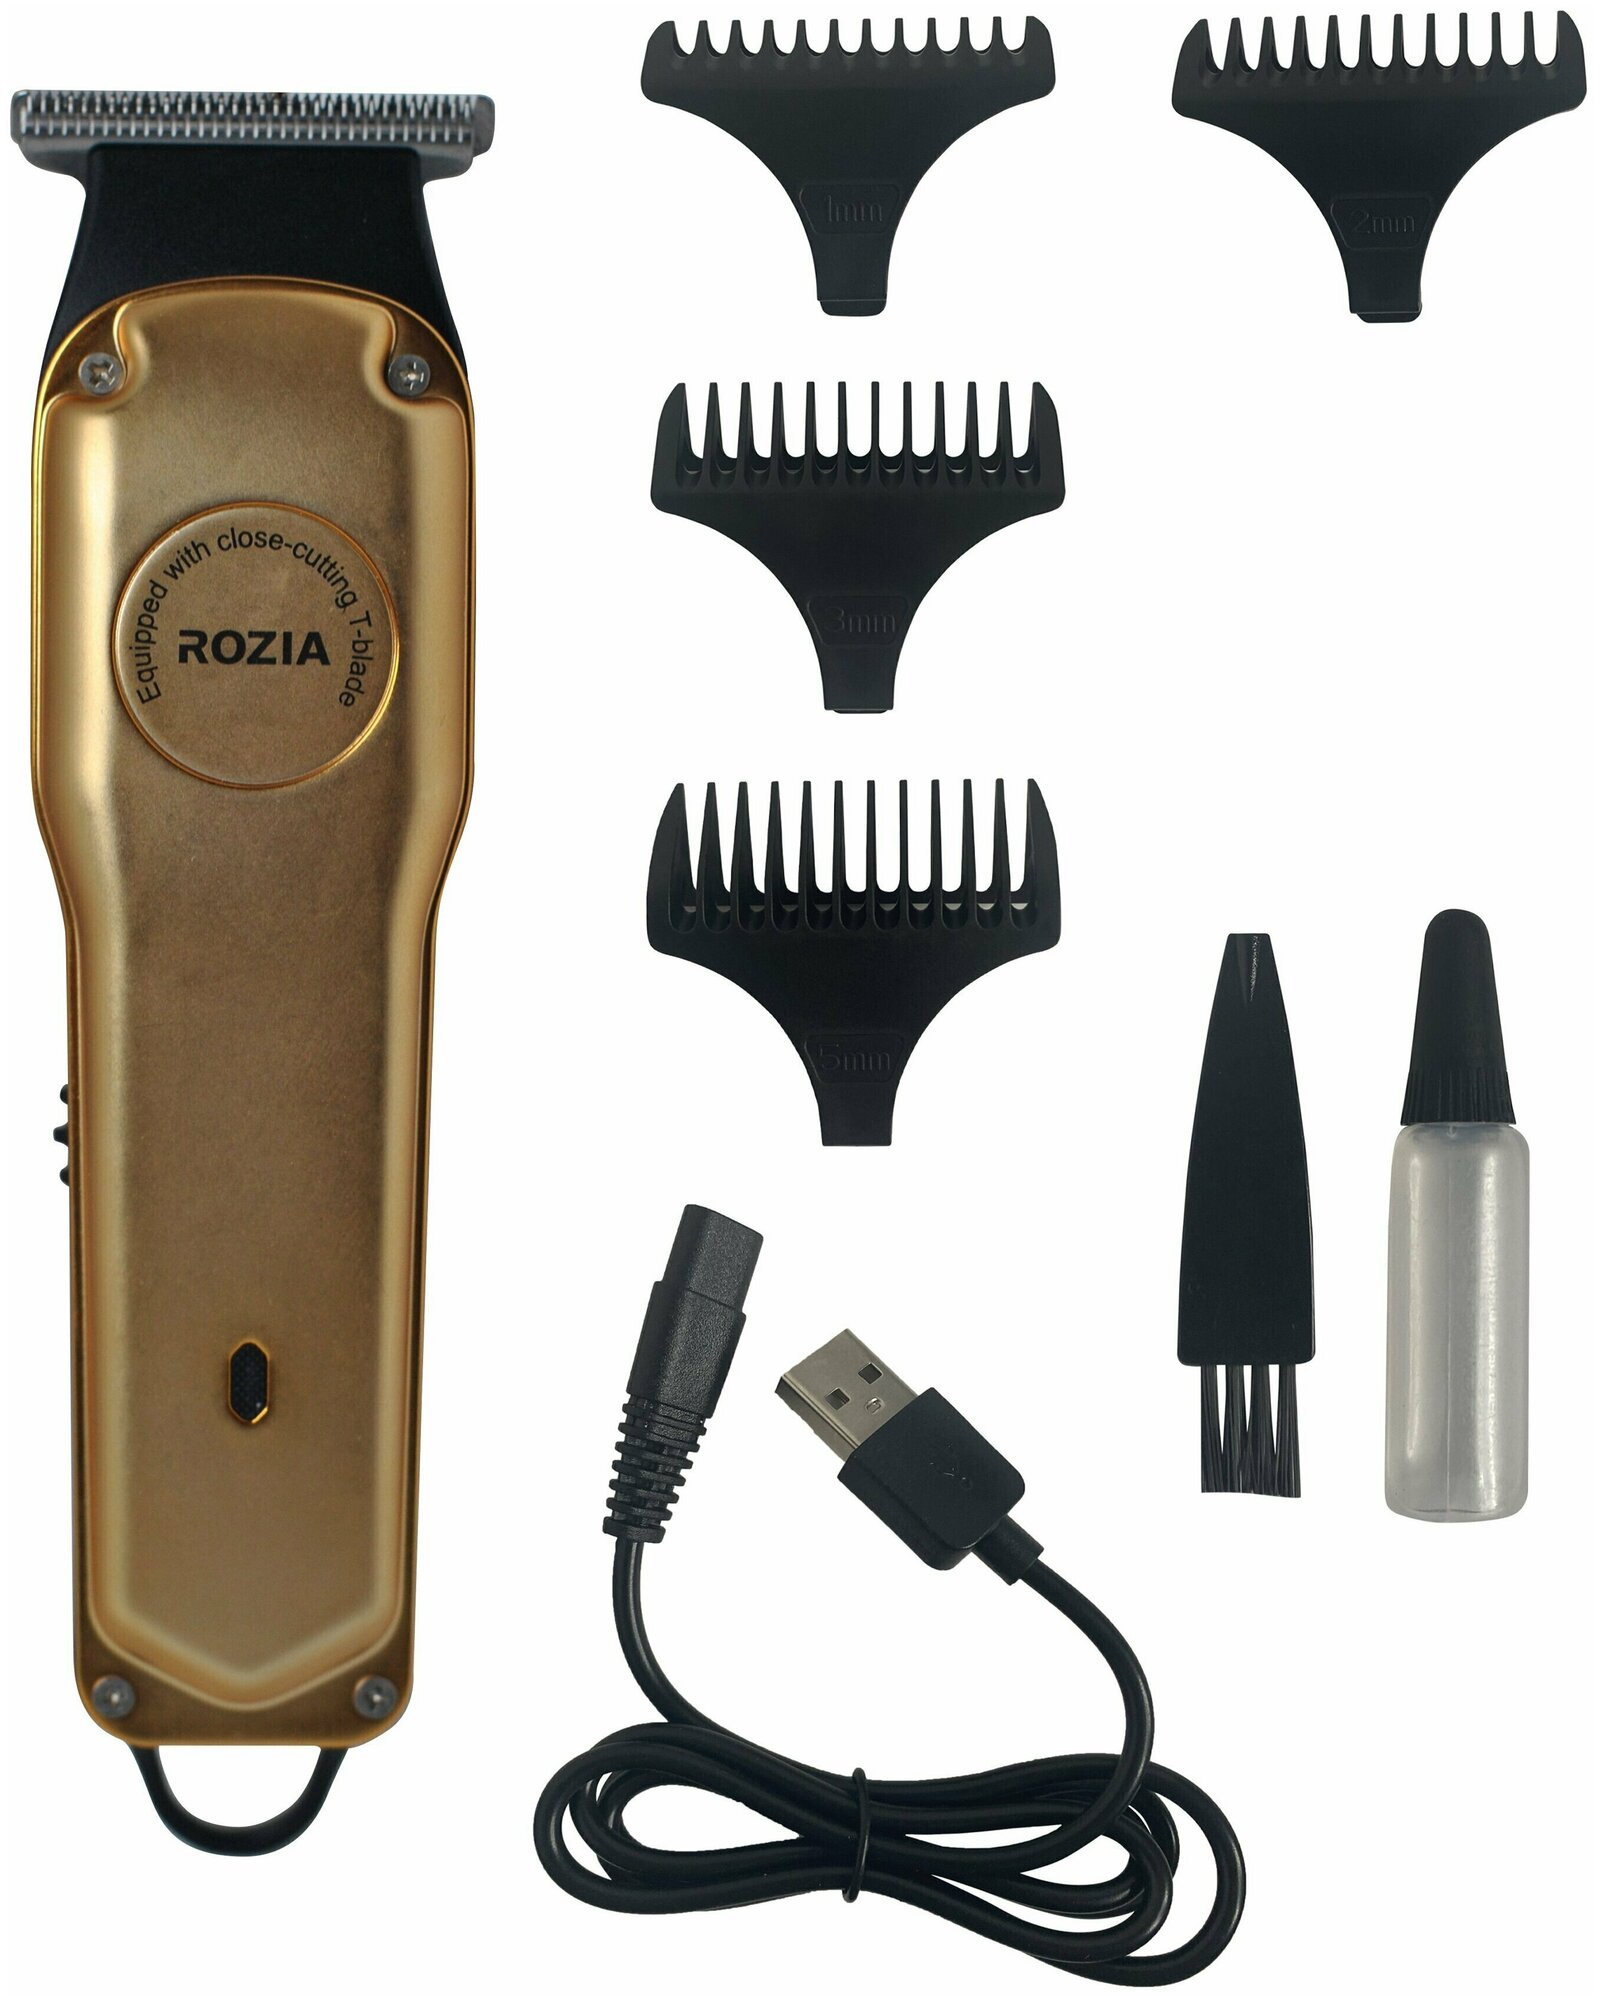 Профессиональная машинка для стрижки волос RoziaPro, Триммер для стрижки RoziaPro, цельнометаллический, золотой